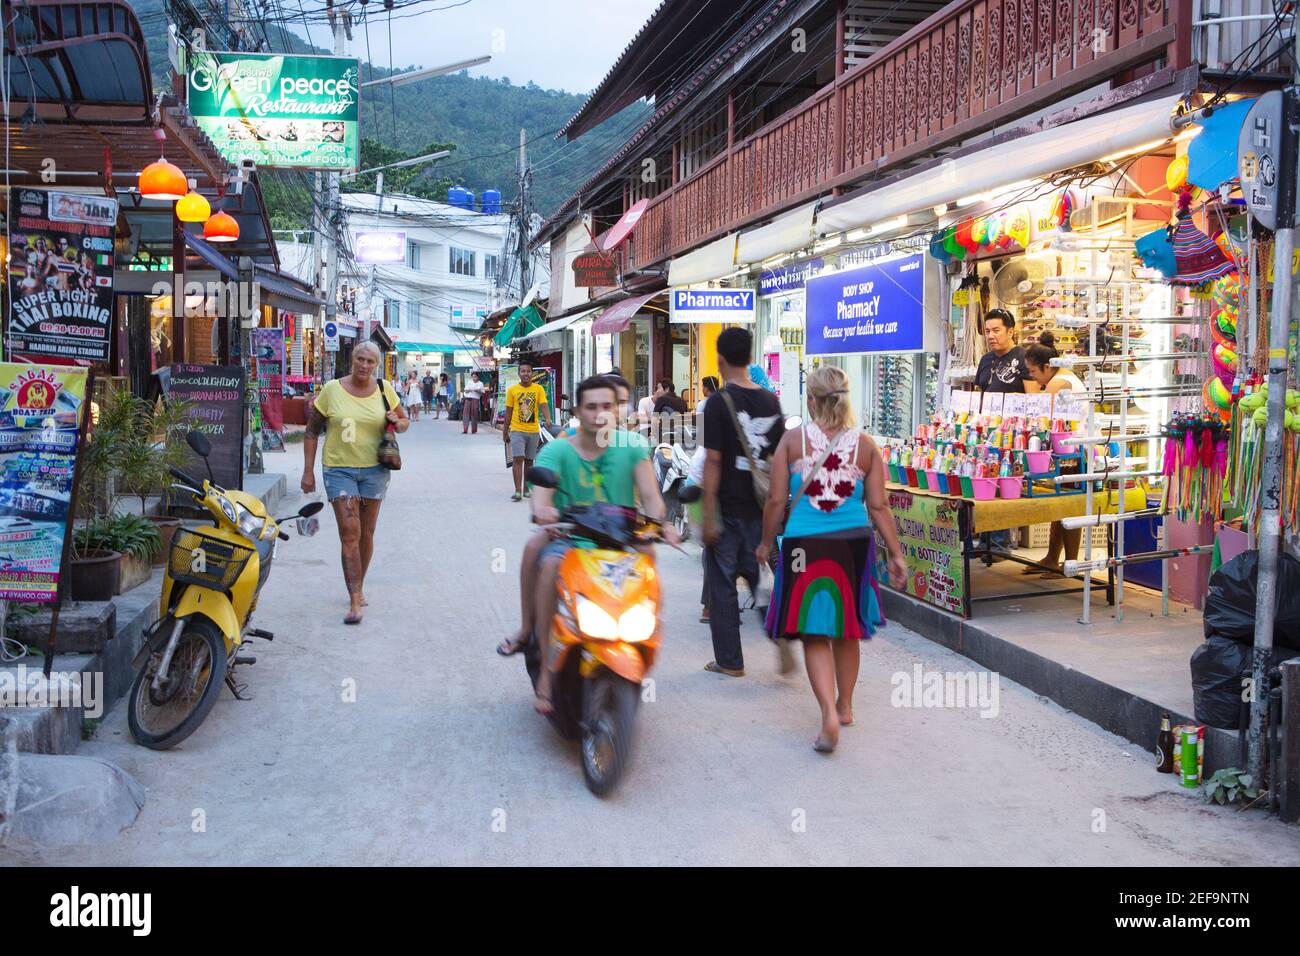 Touristes dans une rue arrière animée bordée de boutiques, bars, restaurants et magasins, île de Koh Phangan, Thaïlande, Asie du Sud-est Banque D'Images